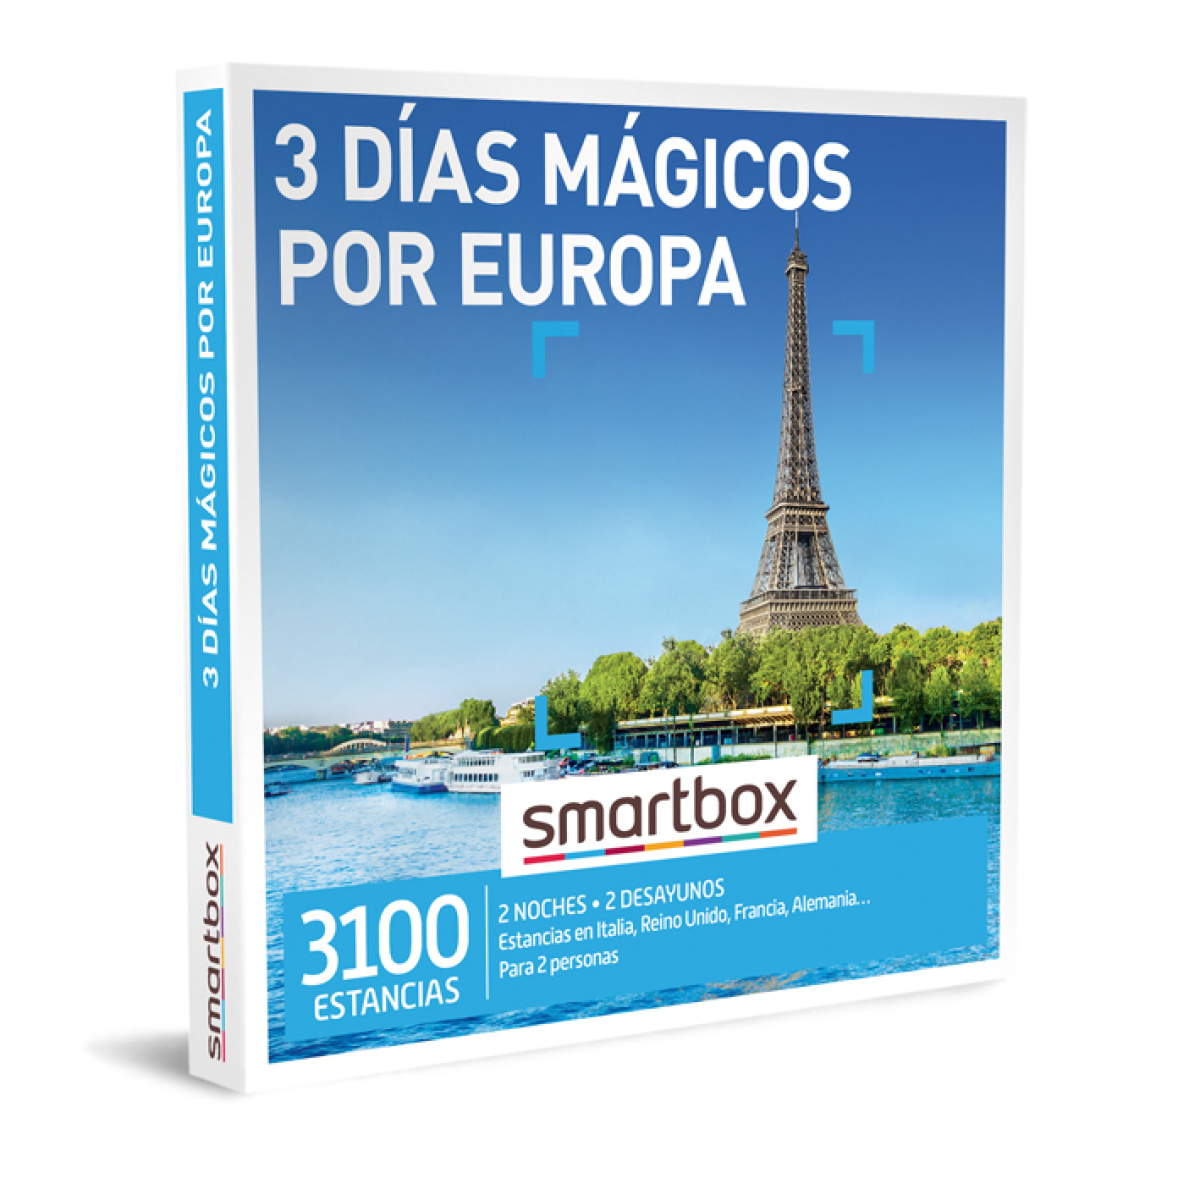  smartbox 3 días mágicos por europa ocio y deporte 